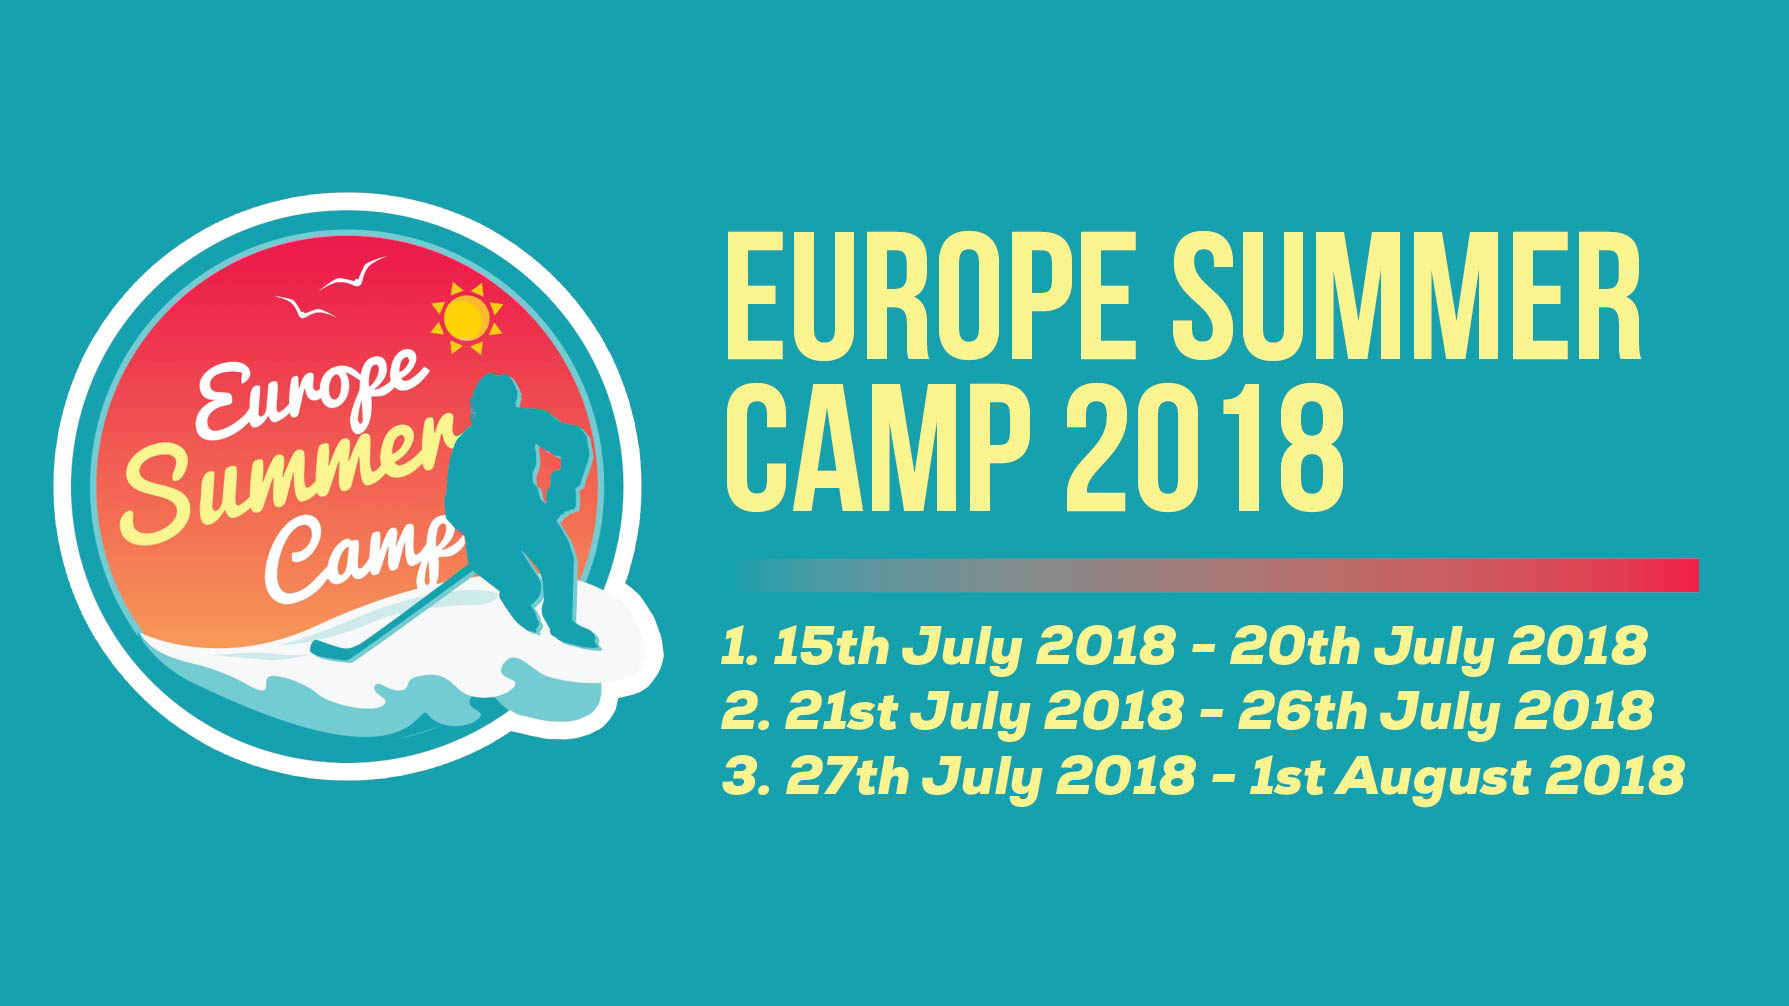 II. Europe Summer Camp